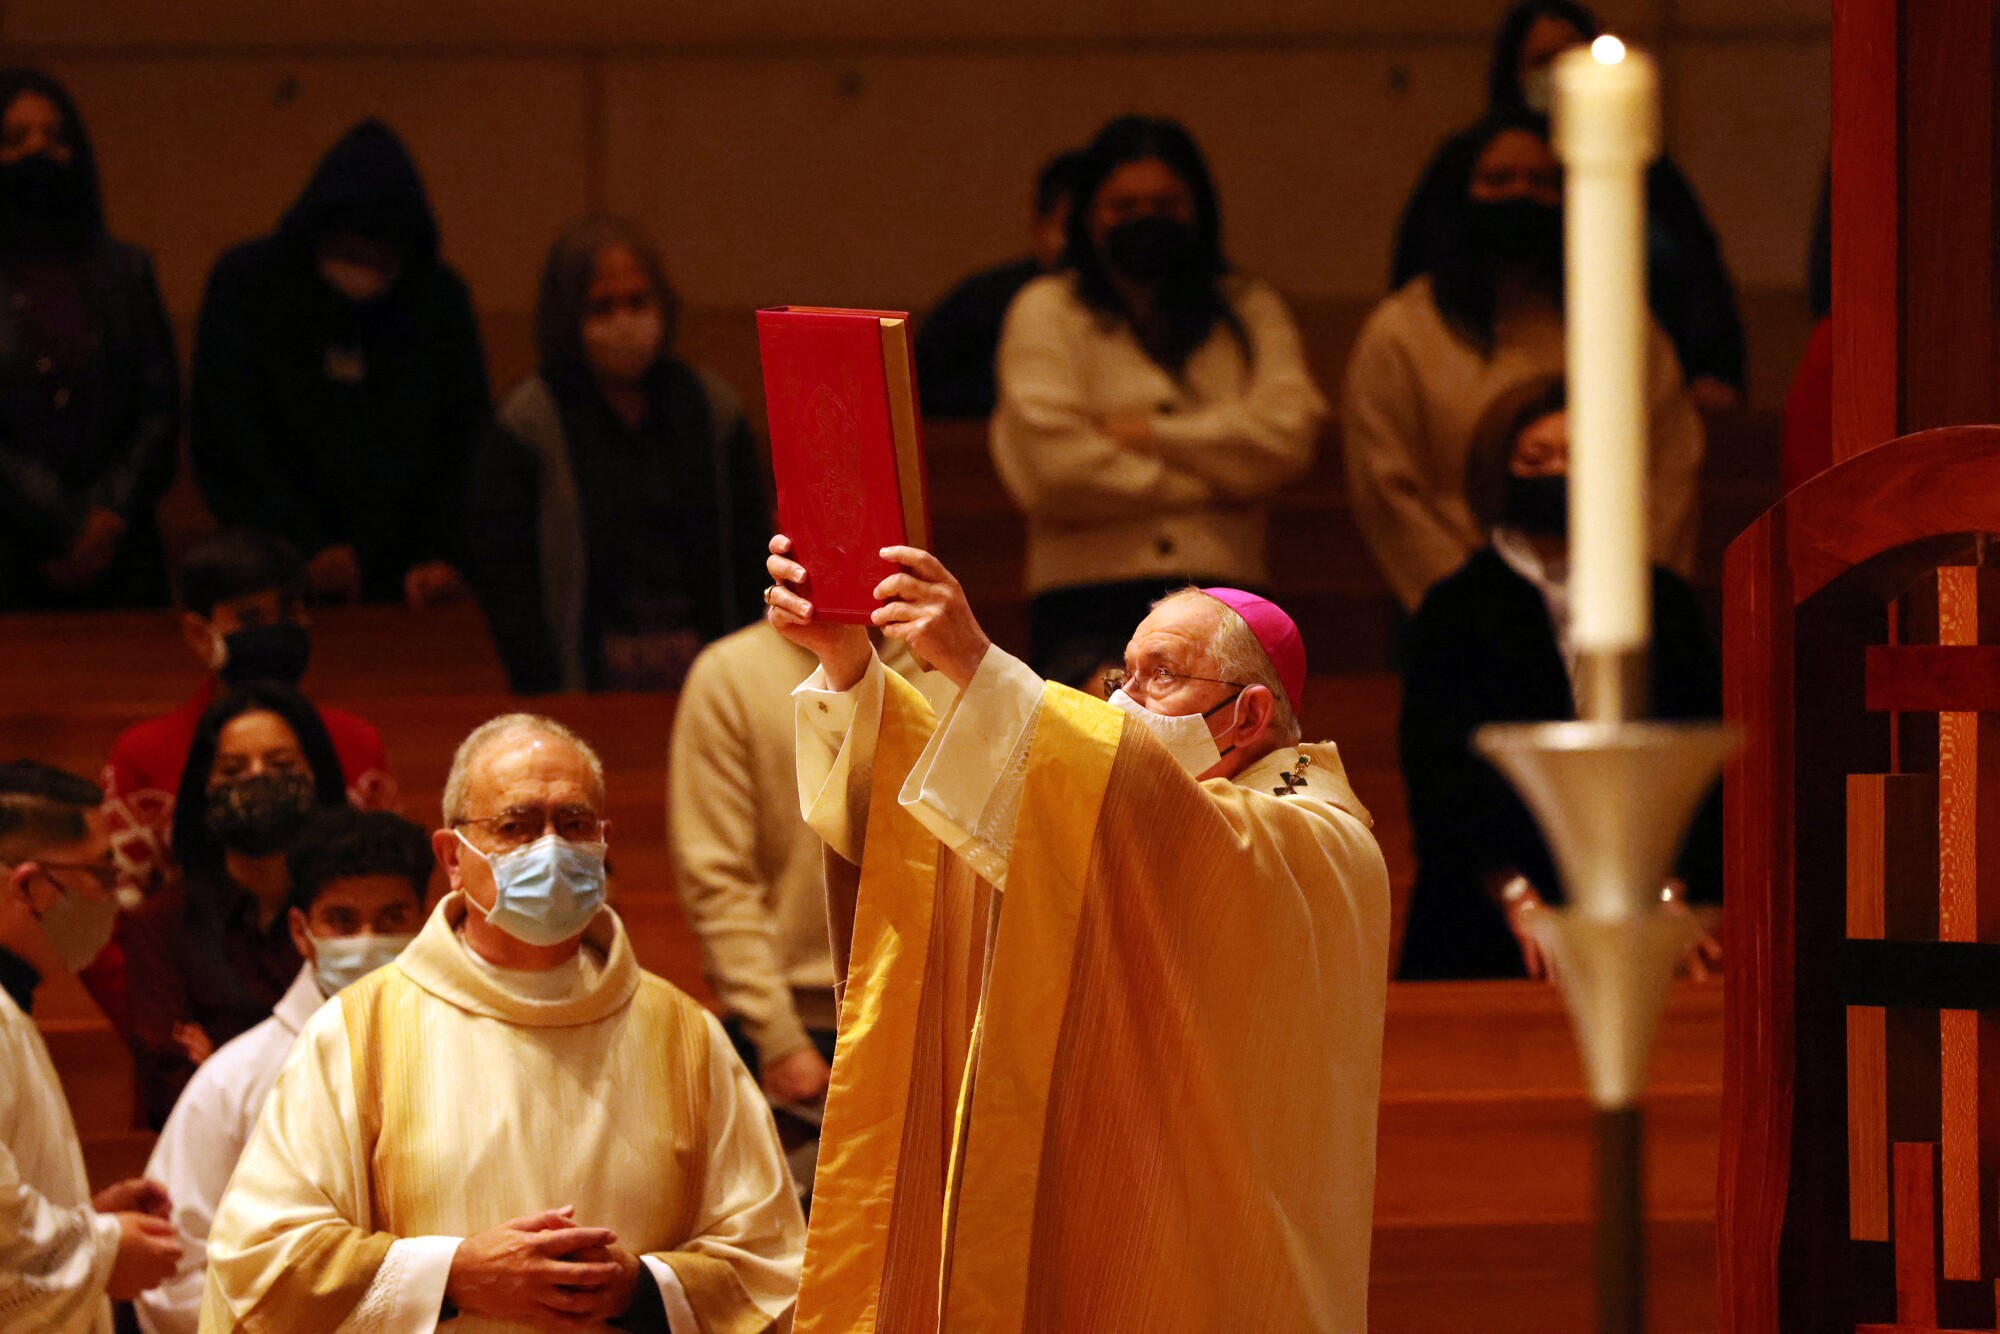 اسقف اعظم خوزه اچ. گومز مراسم مذهبی خانواده را در شب کریسمس در کلیسای جامع مریم مقدس در لس آنجلس رهبری خواهد کرد.